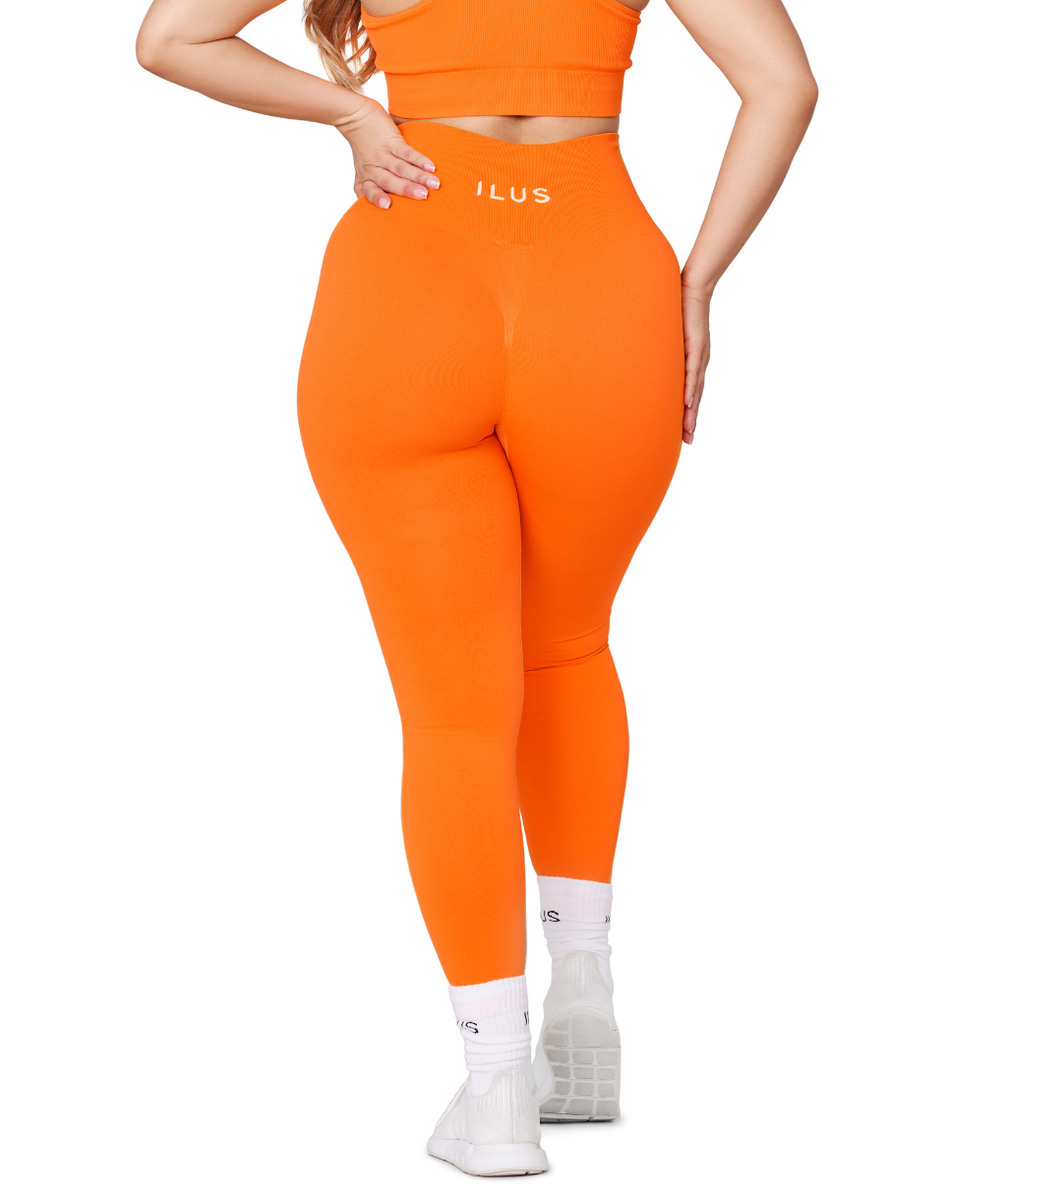 Sweetflexx leggins? : r/orangetheory